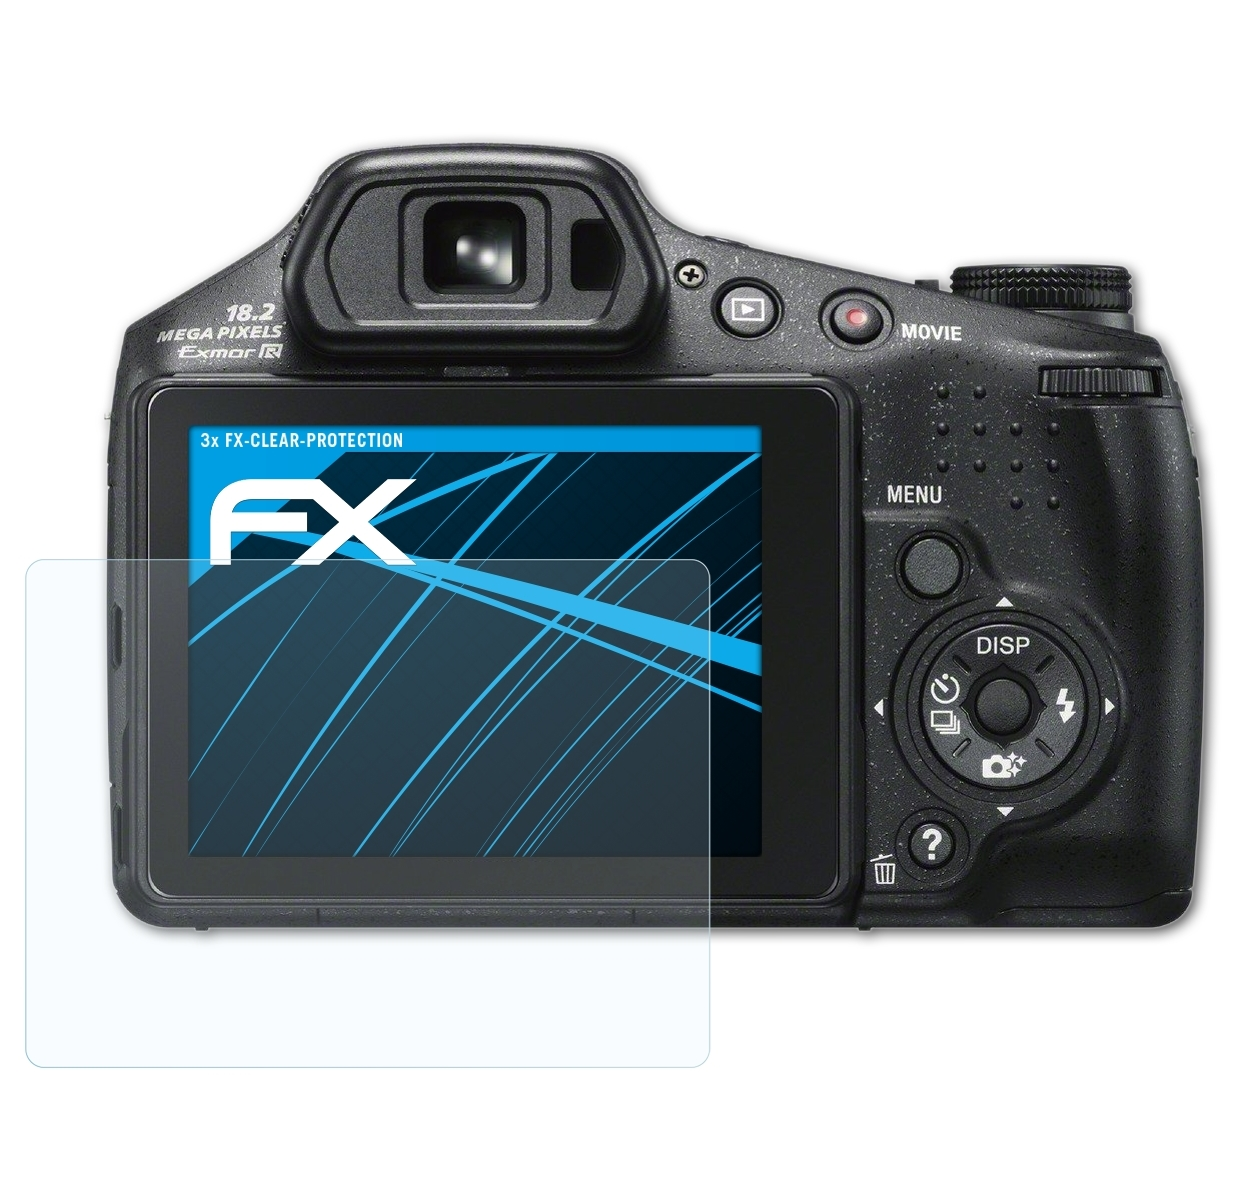 FX-Clear Displayschutz(für DSC-HX200V) ATFOLIX 3x Sony